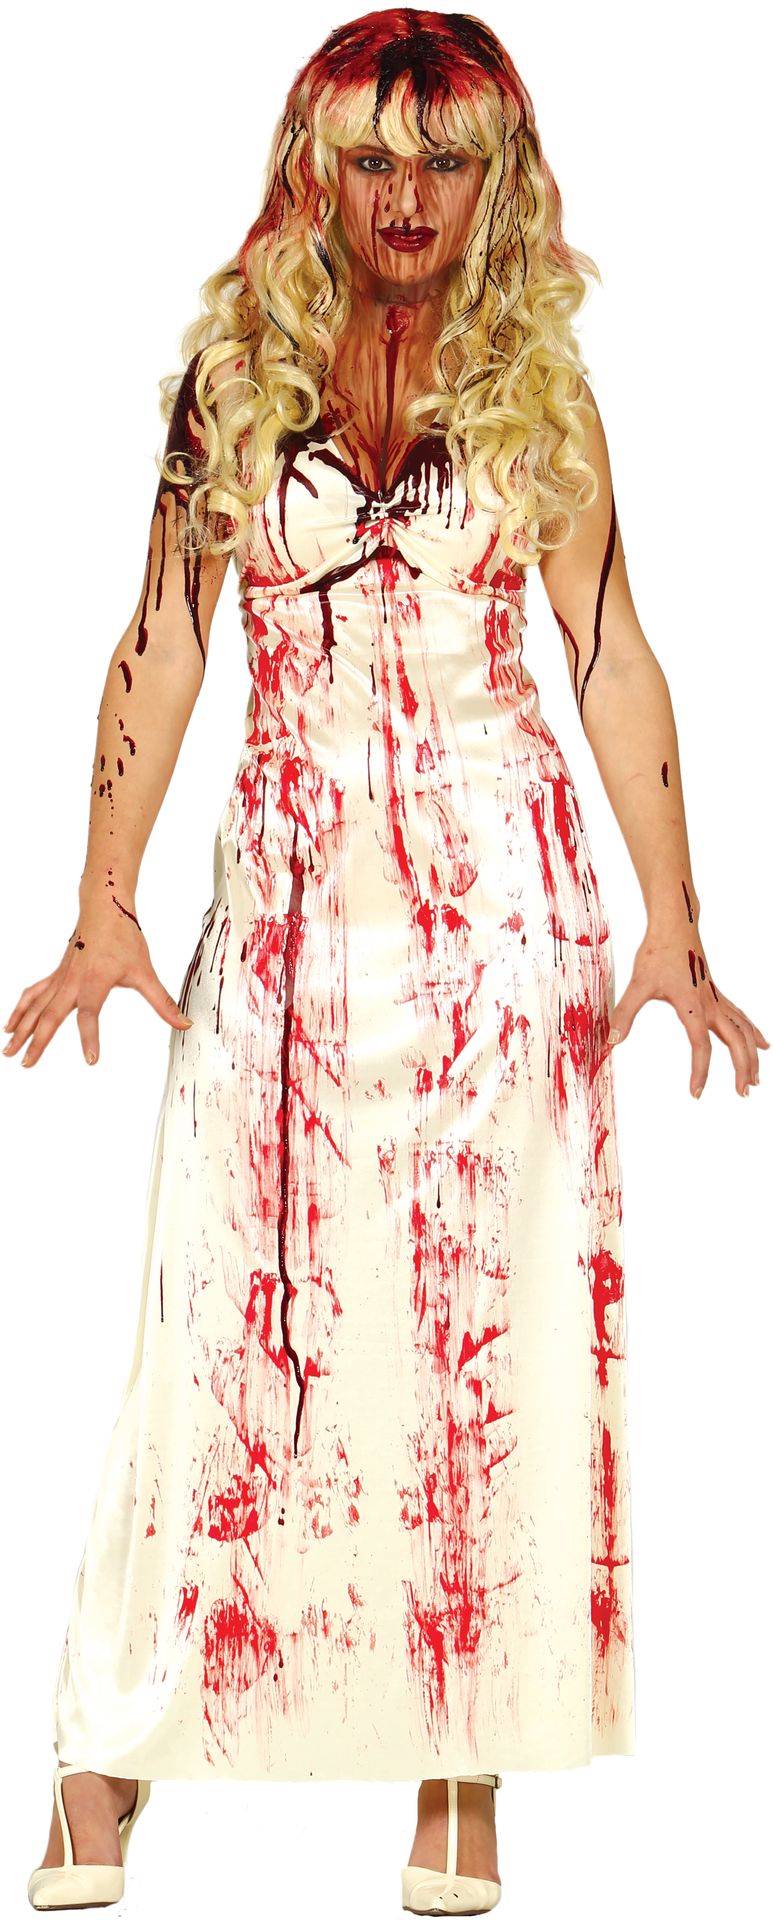 Bloedige zombie bruid